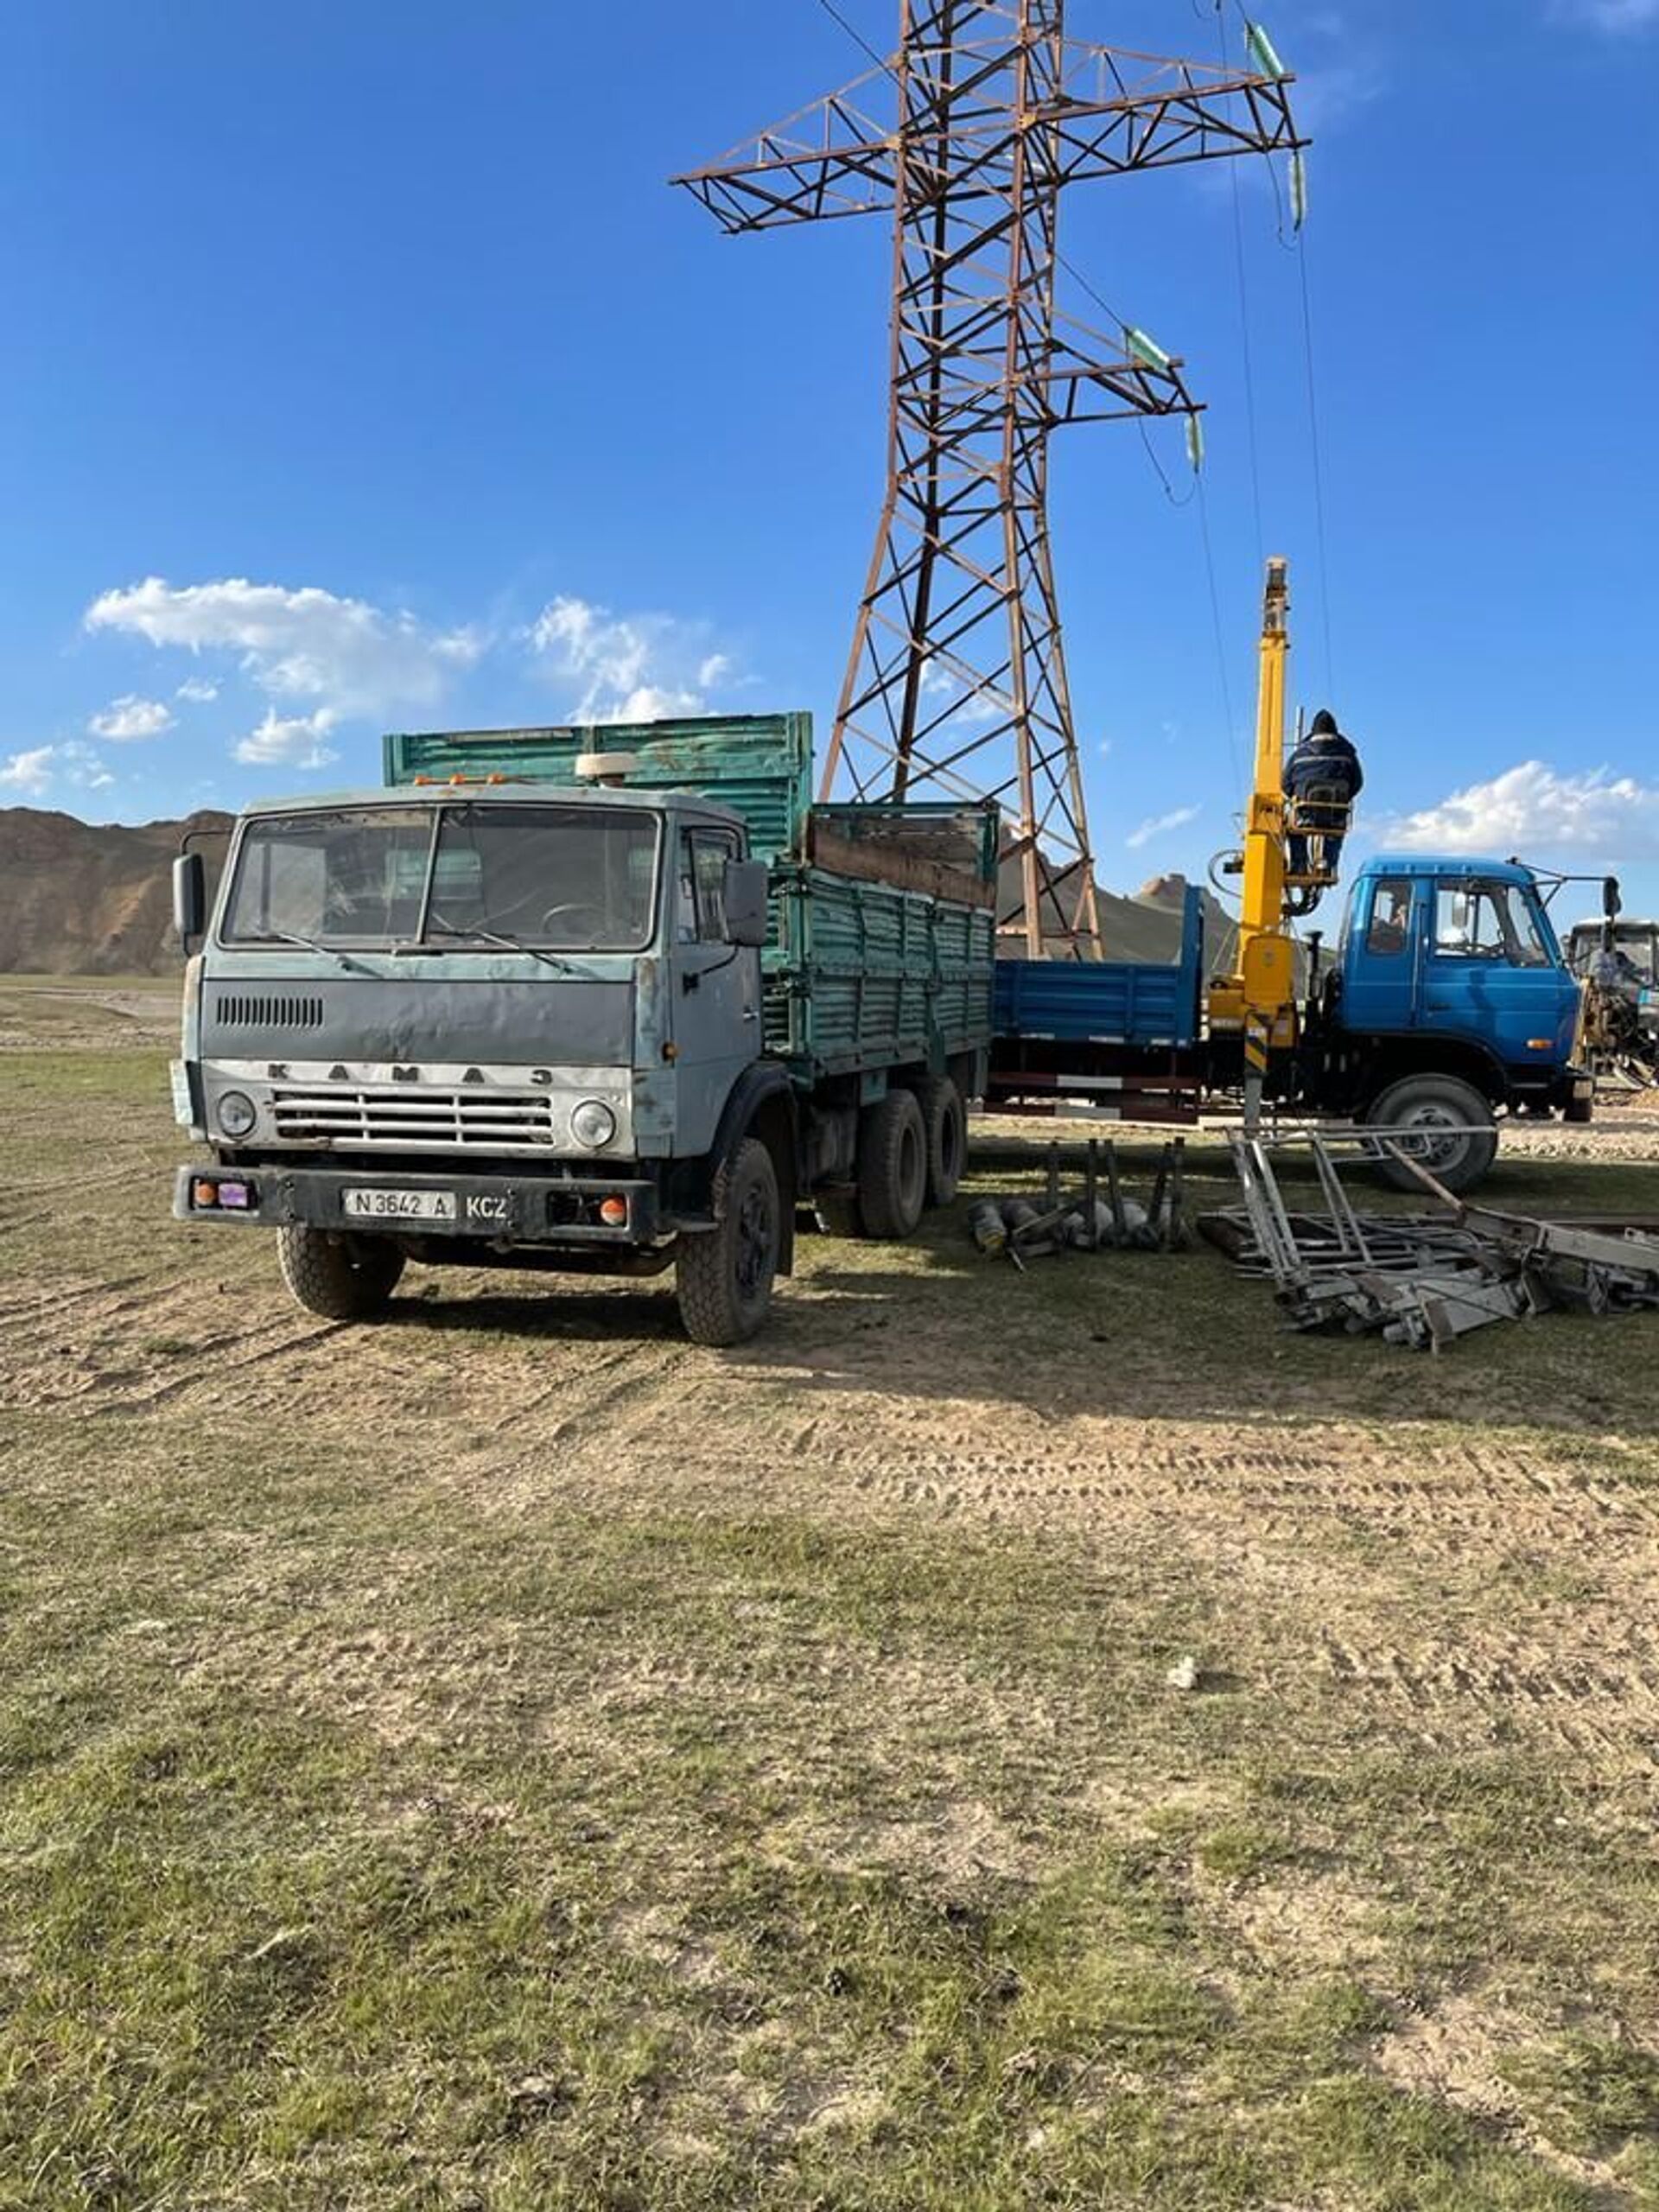 На погранзаставе в Ат-Баши впервые за 30 лет проводят электричество - Sputnik Кыргызстан, 1920, 25.06.2021